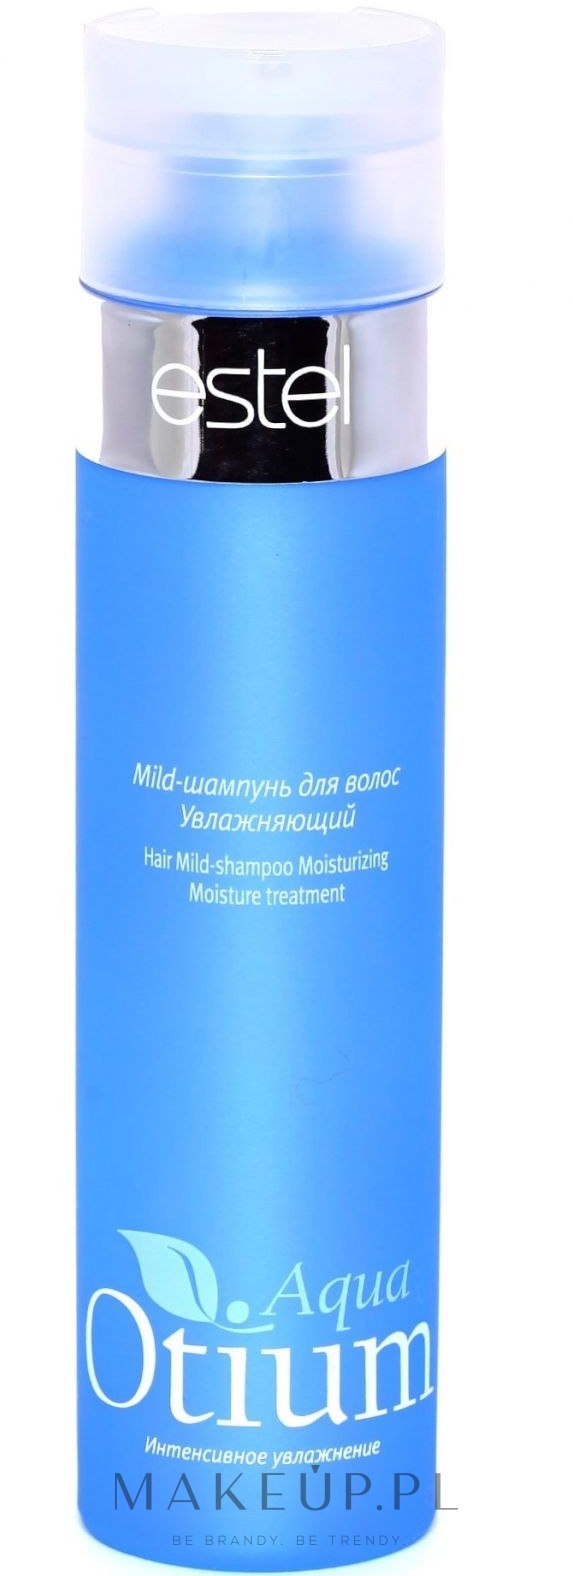 otium aqua szampon nawilżający